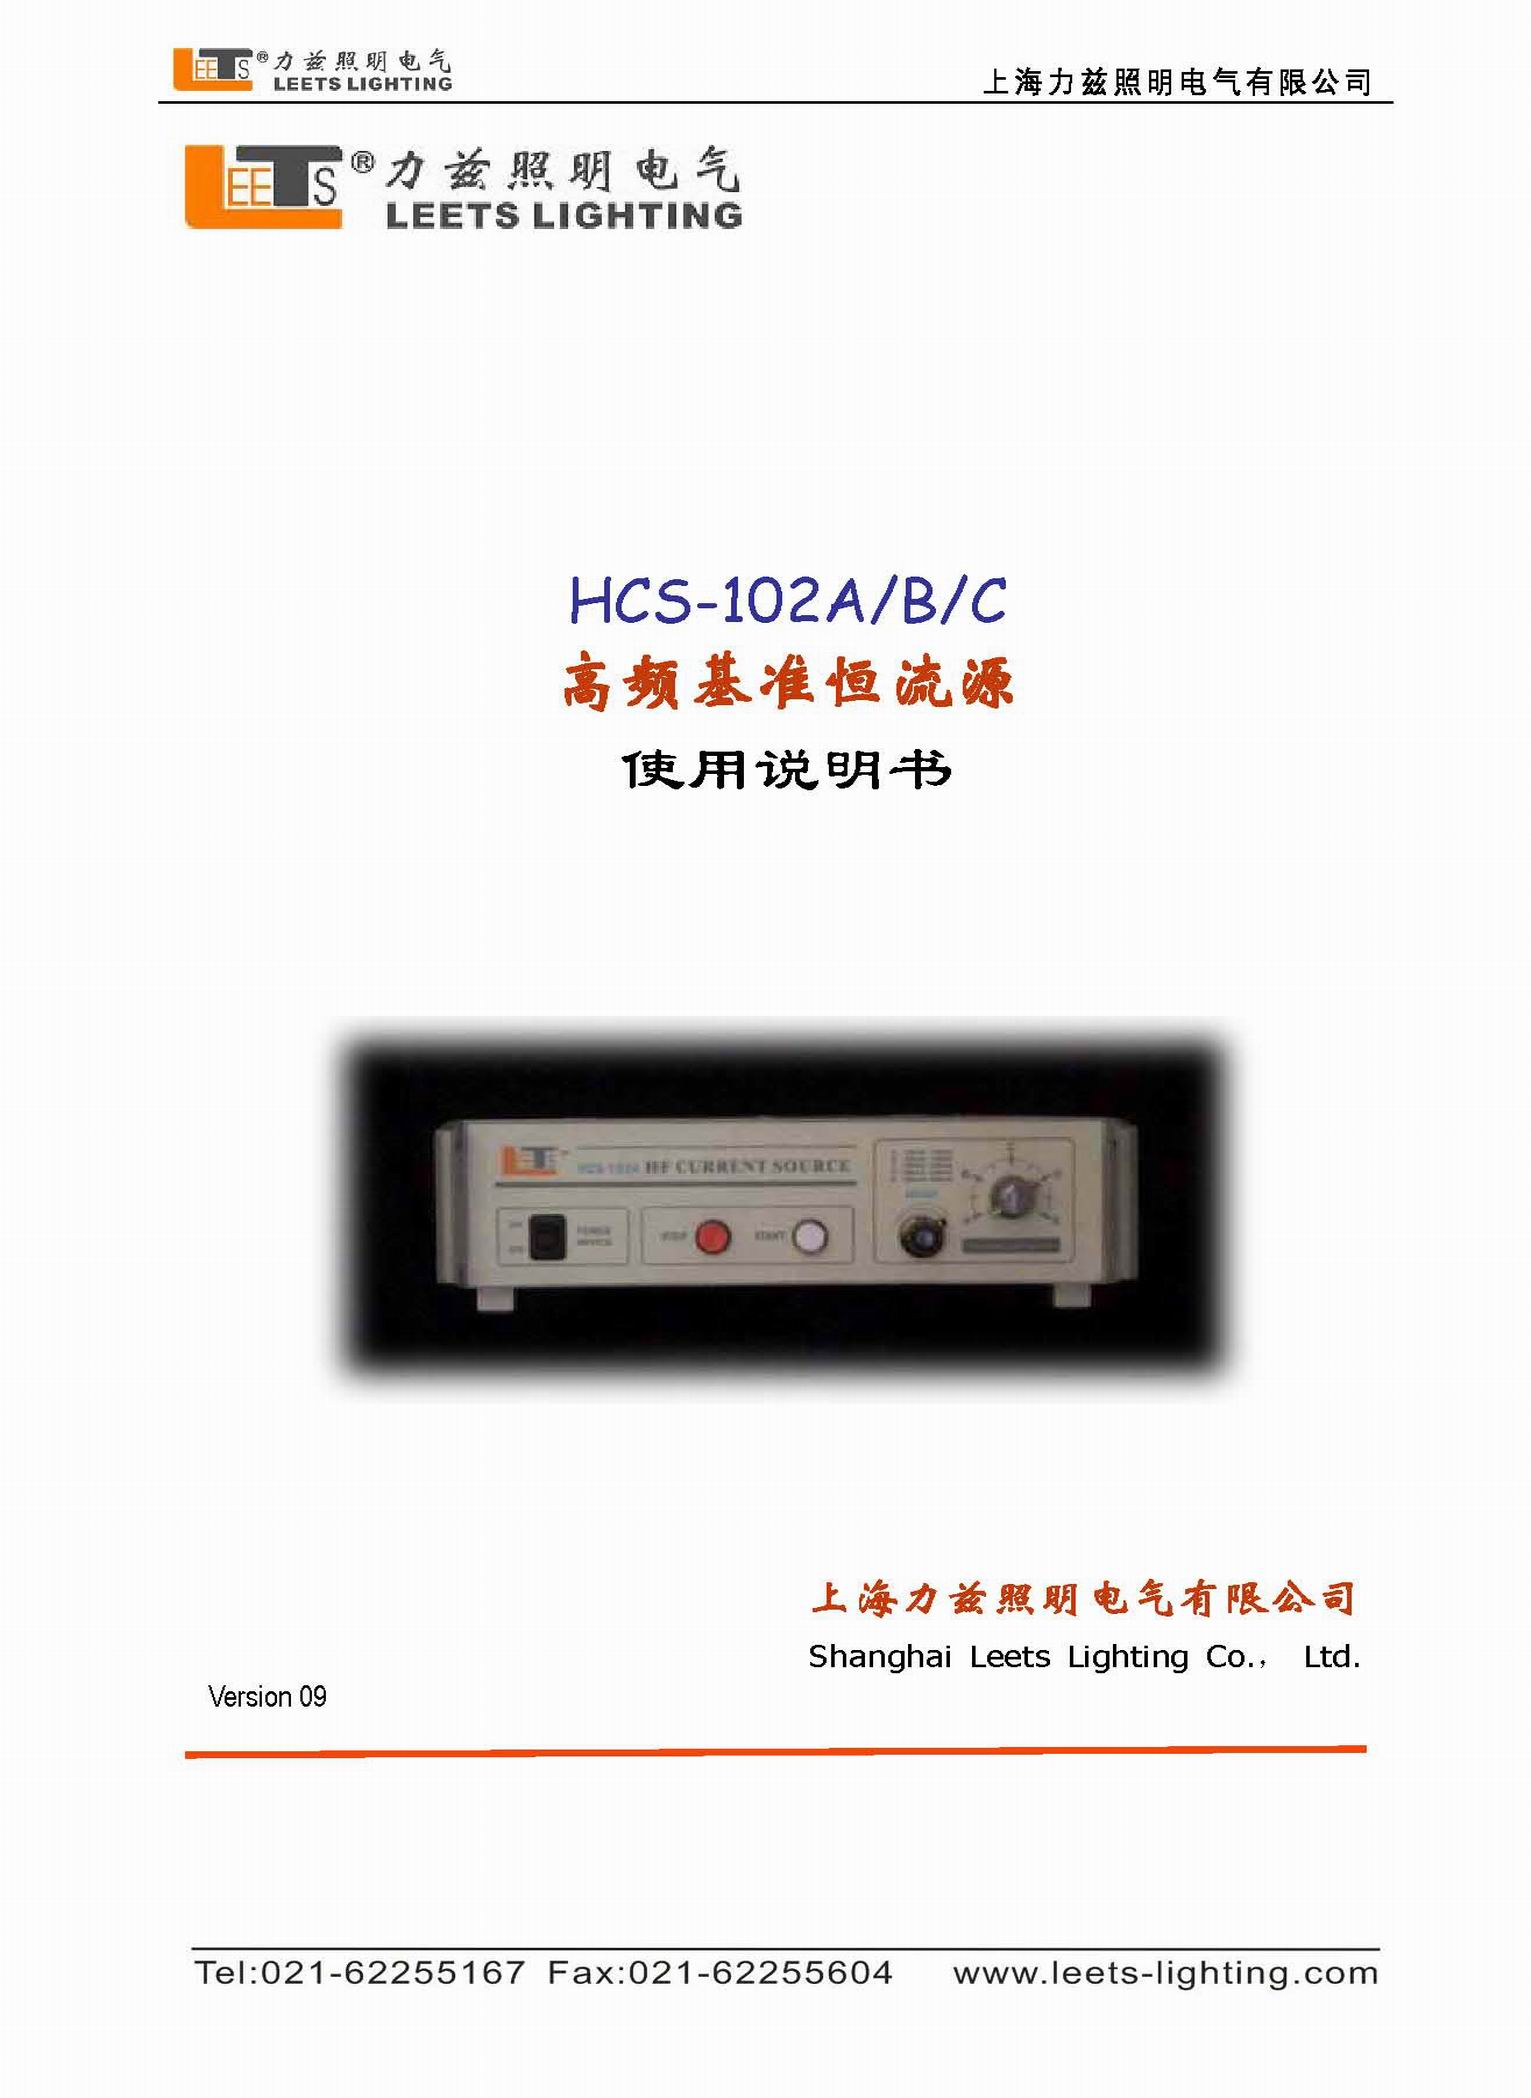 HCS-102ABC